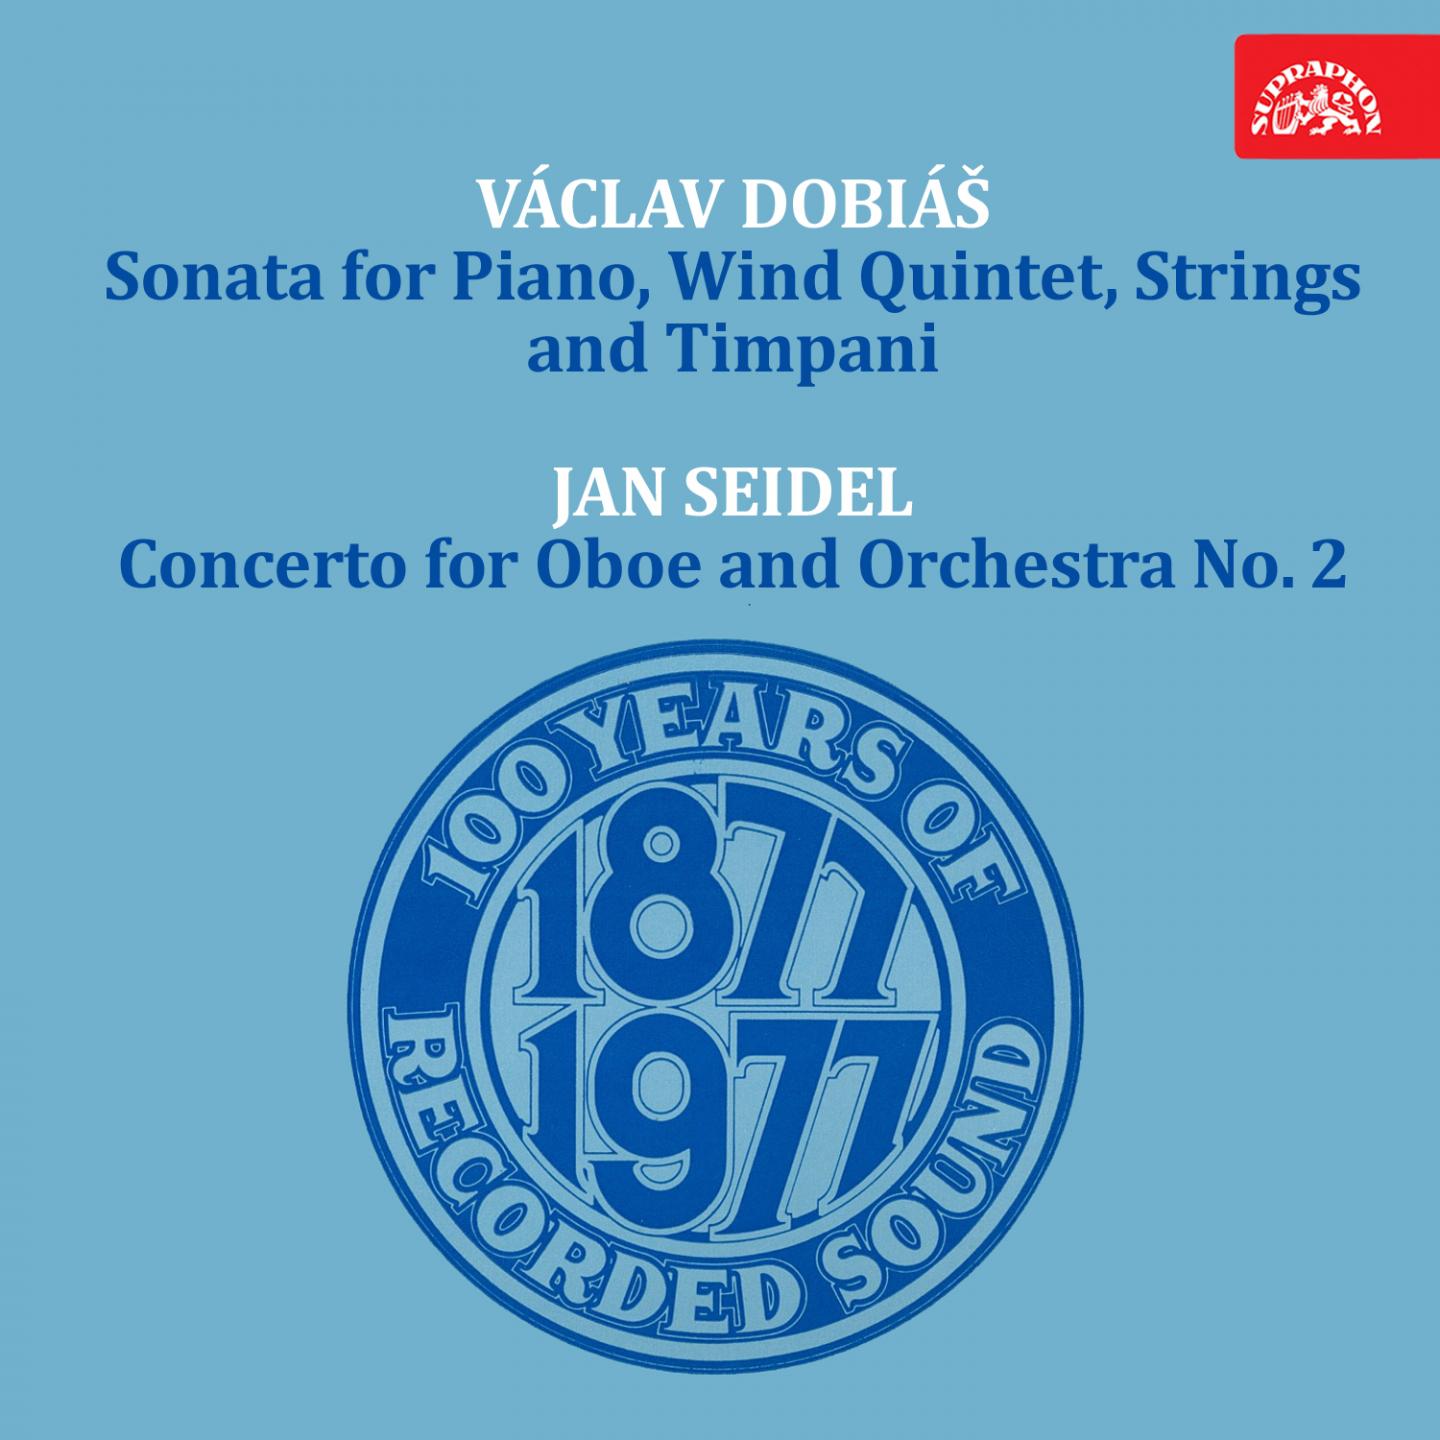 Dobia: Sonata for Piano, Wind Quintet, Strings and Timpani  Seidel: Oboe Concerto No. 2